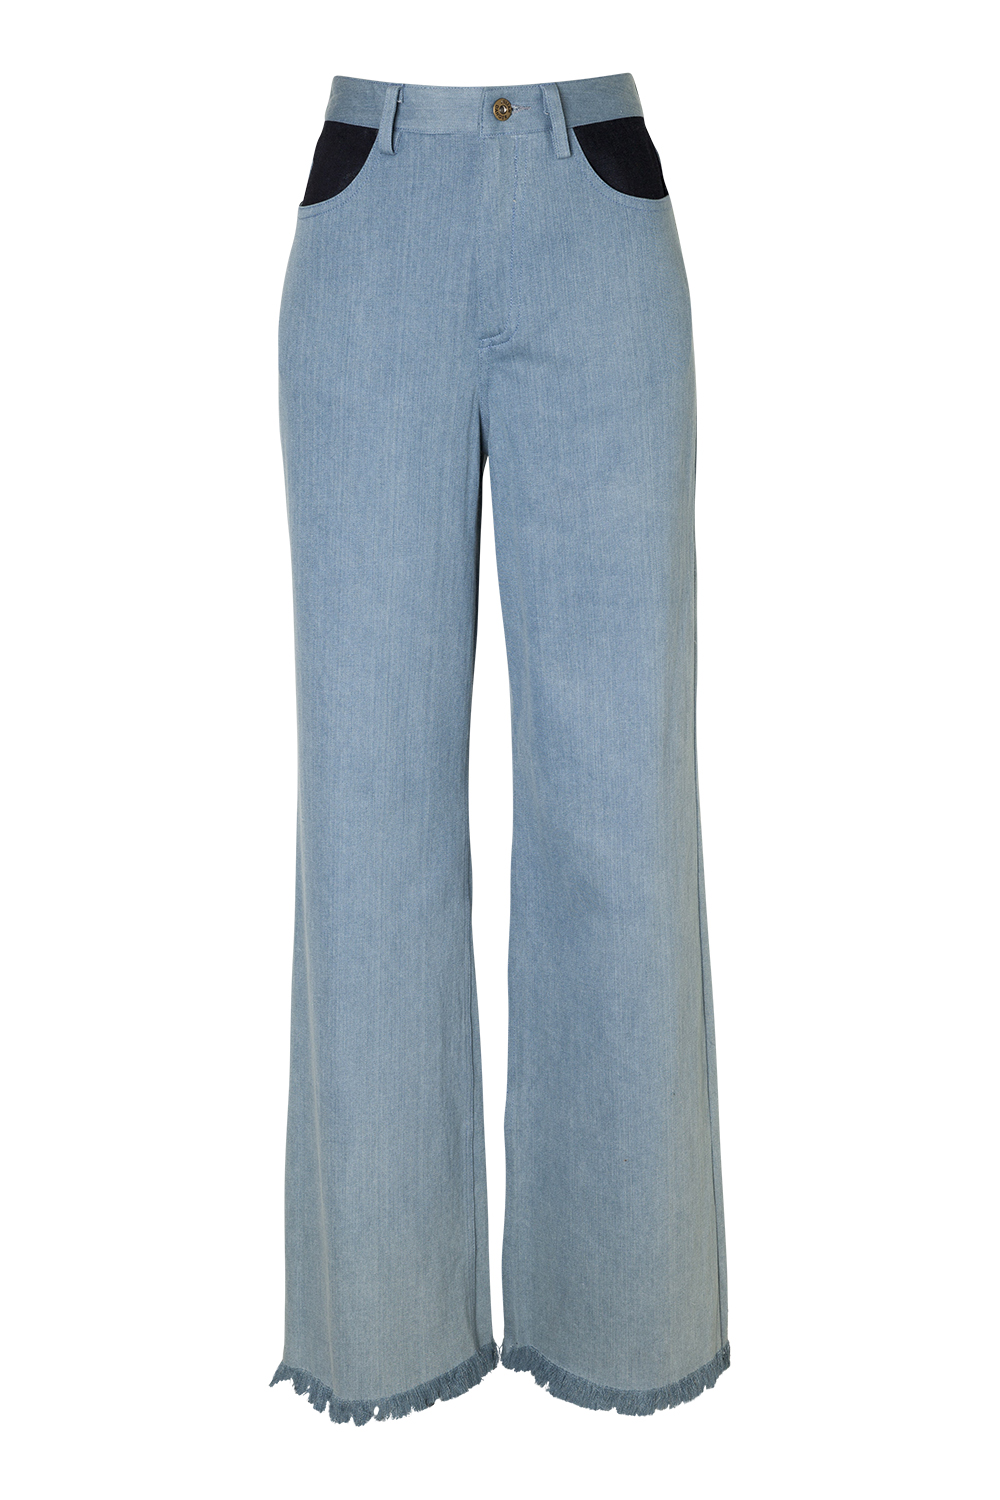 Jeans, $311, by Julian Danger.